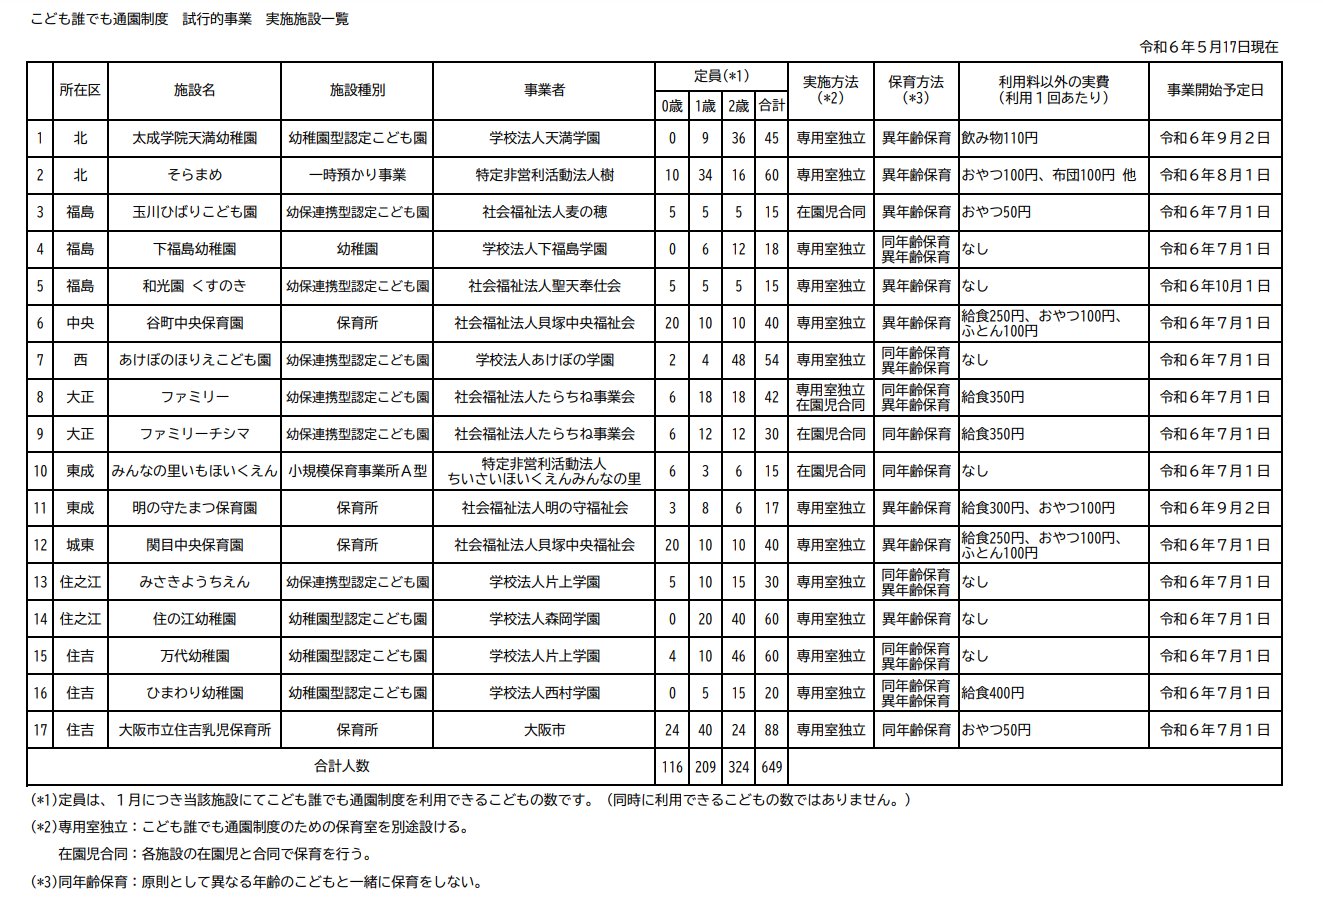 「こども誰でも通園制度（仮称）の試行的事業」の実施17施設を発表　大阪市